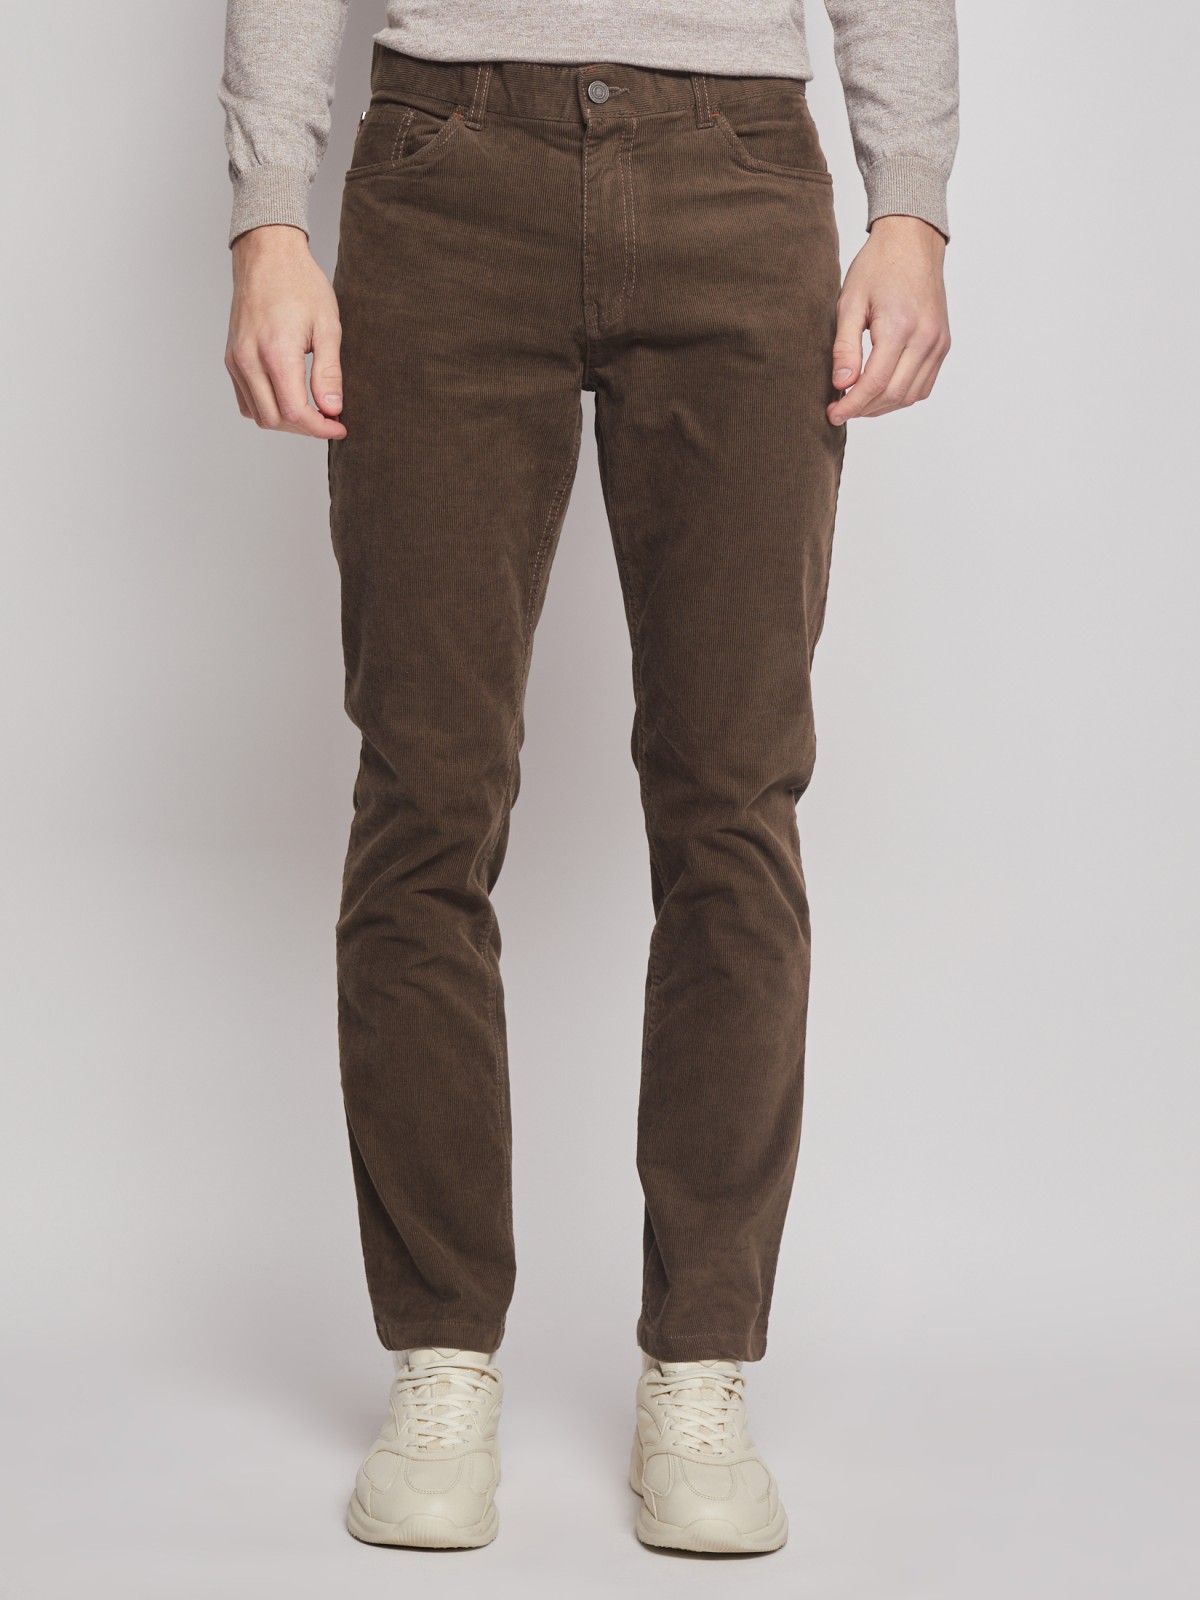 Вельветовые брюки силуэта Slim zolla 012347366013, цвет коричневый, размер 30 - фото 2